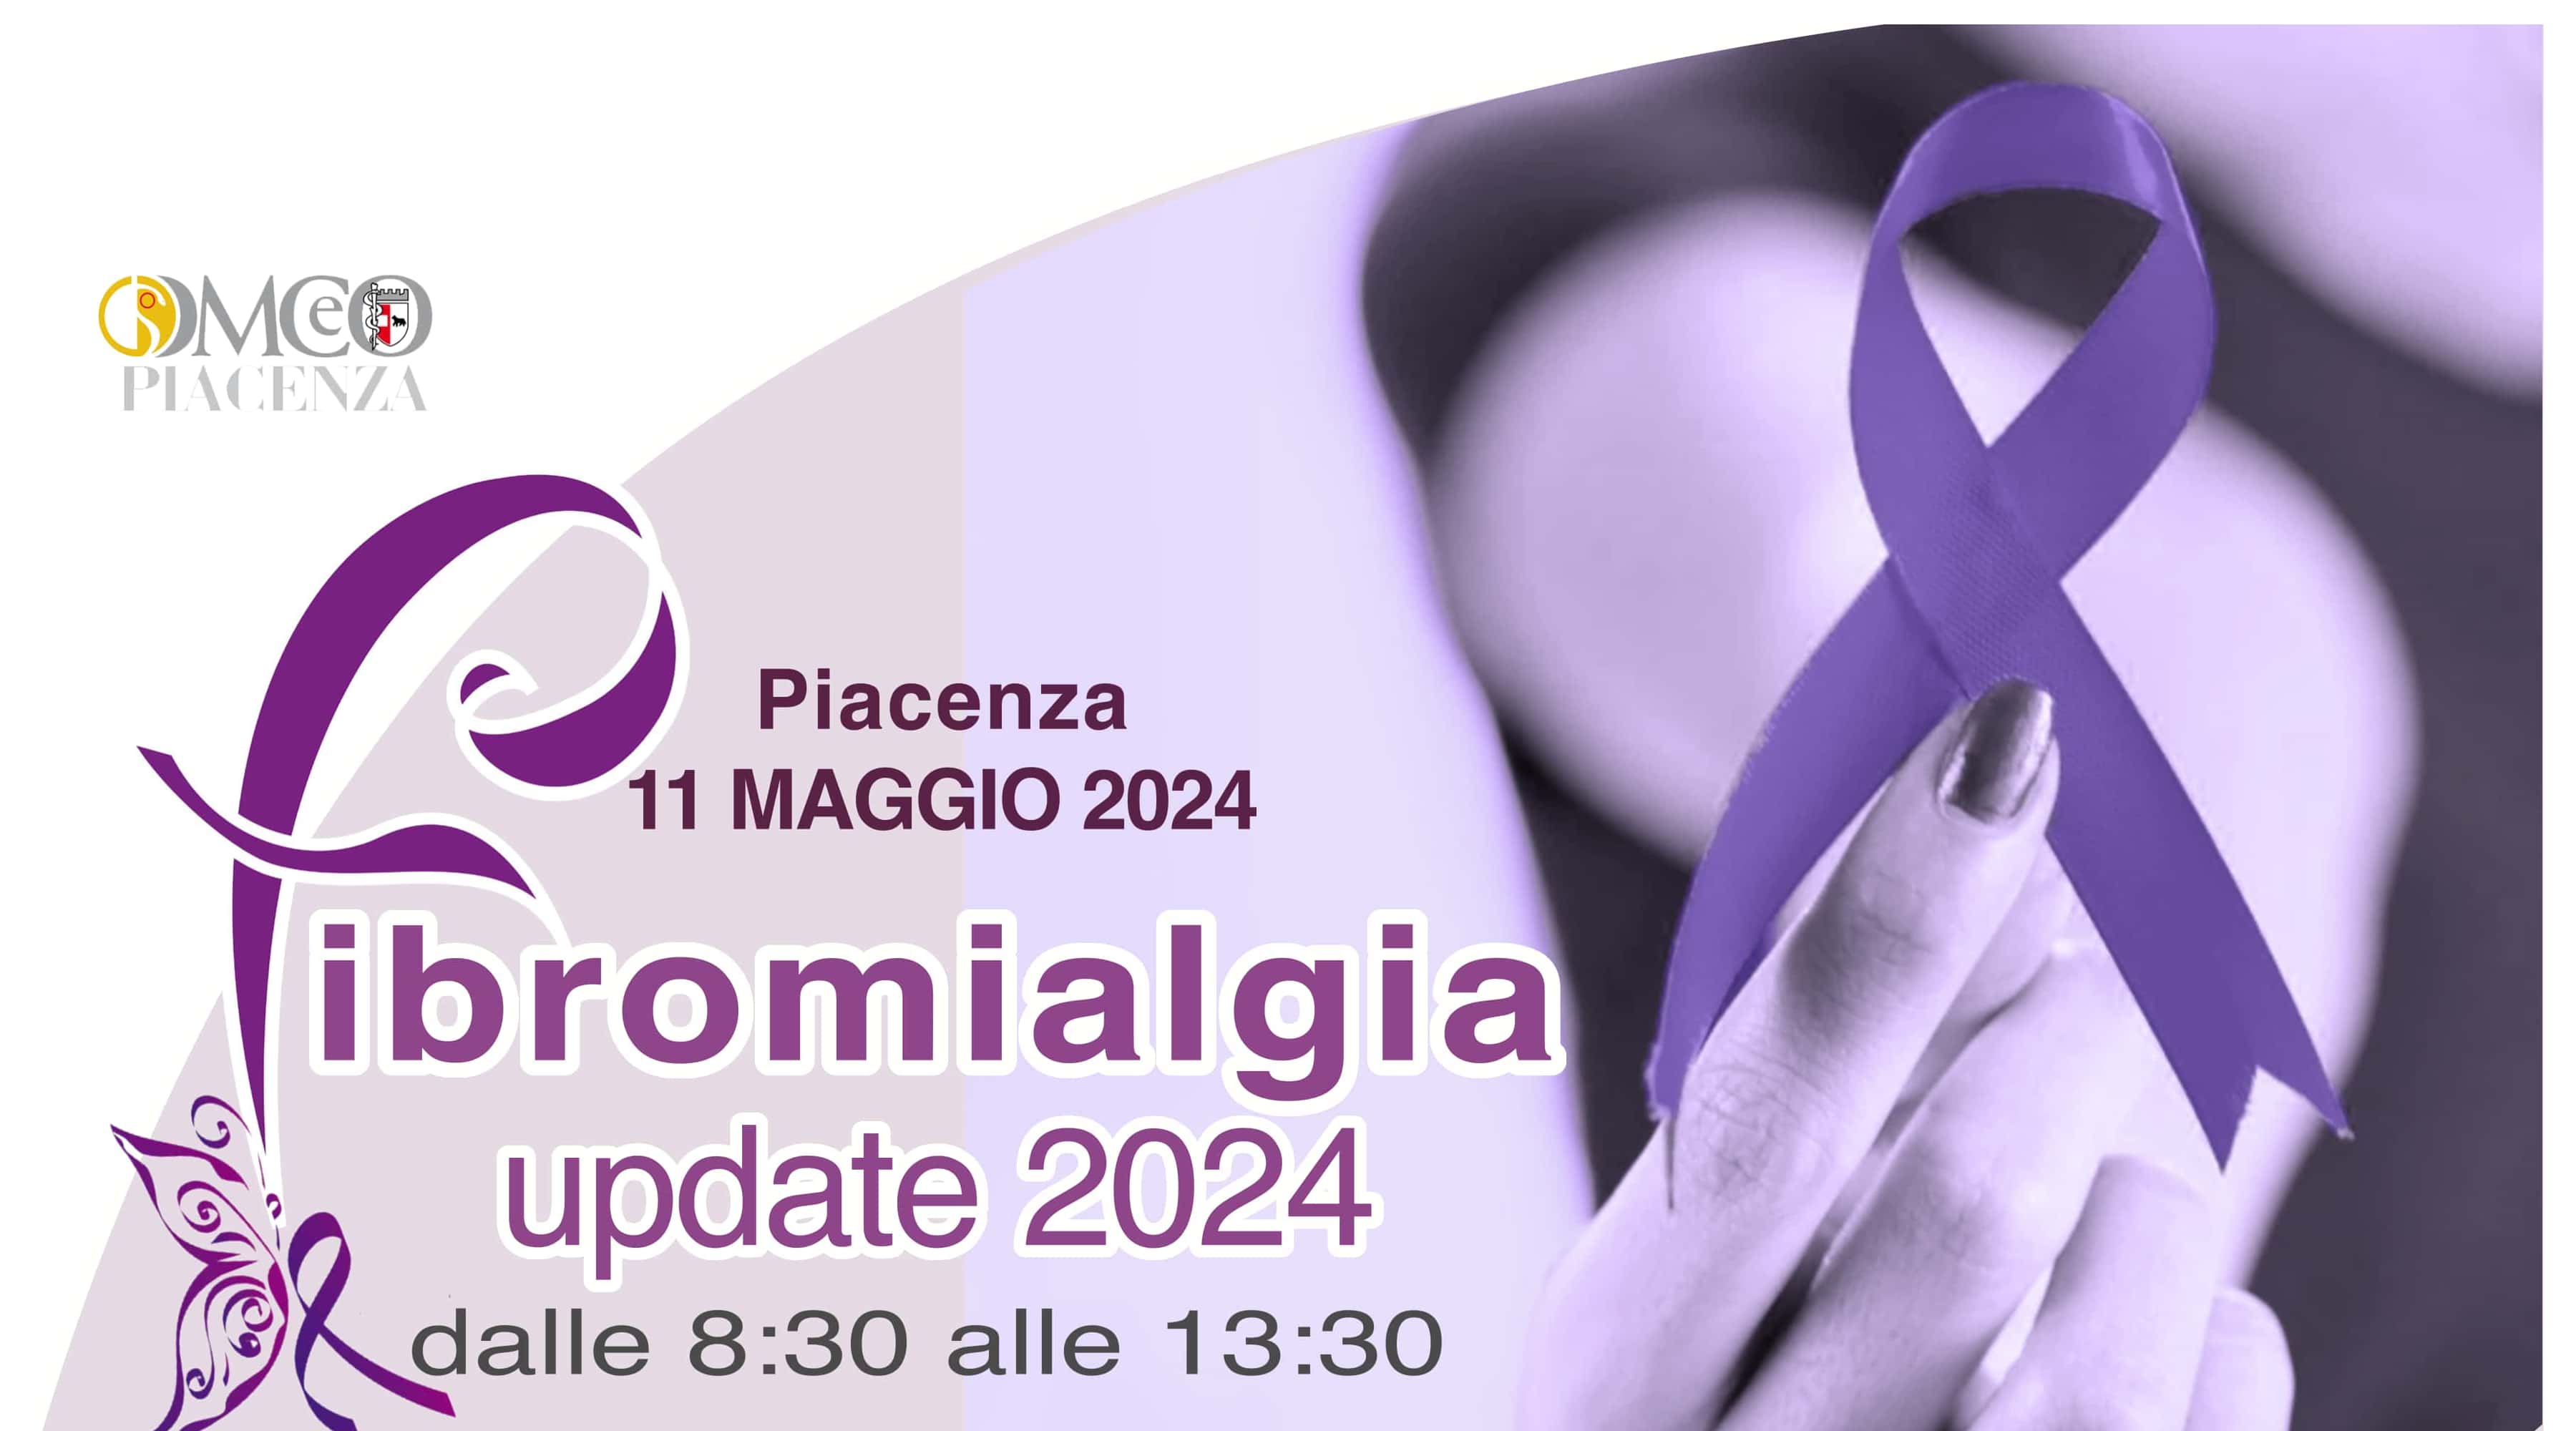 Clicca per accedere all'articolo Fibromialgia Update 2024 - Piacenza, 11 maggio 2024